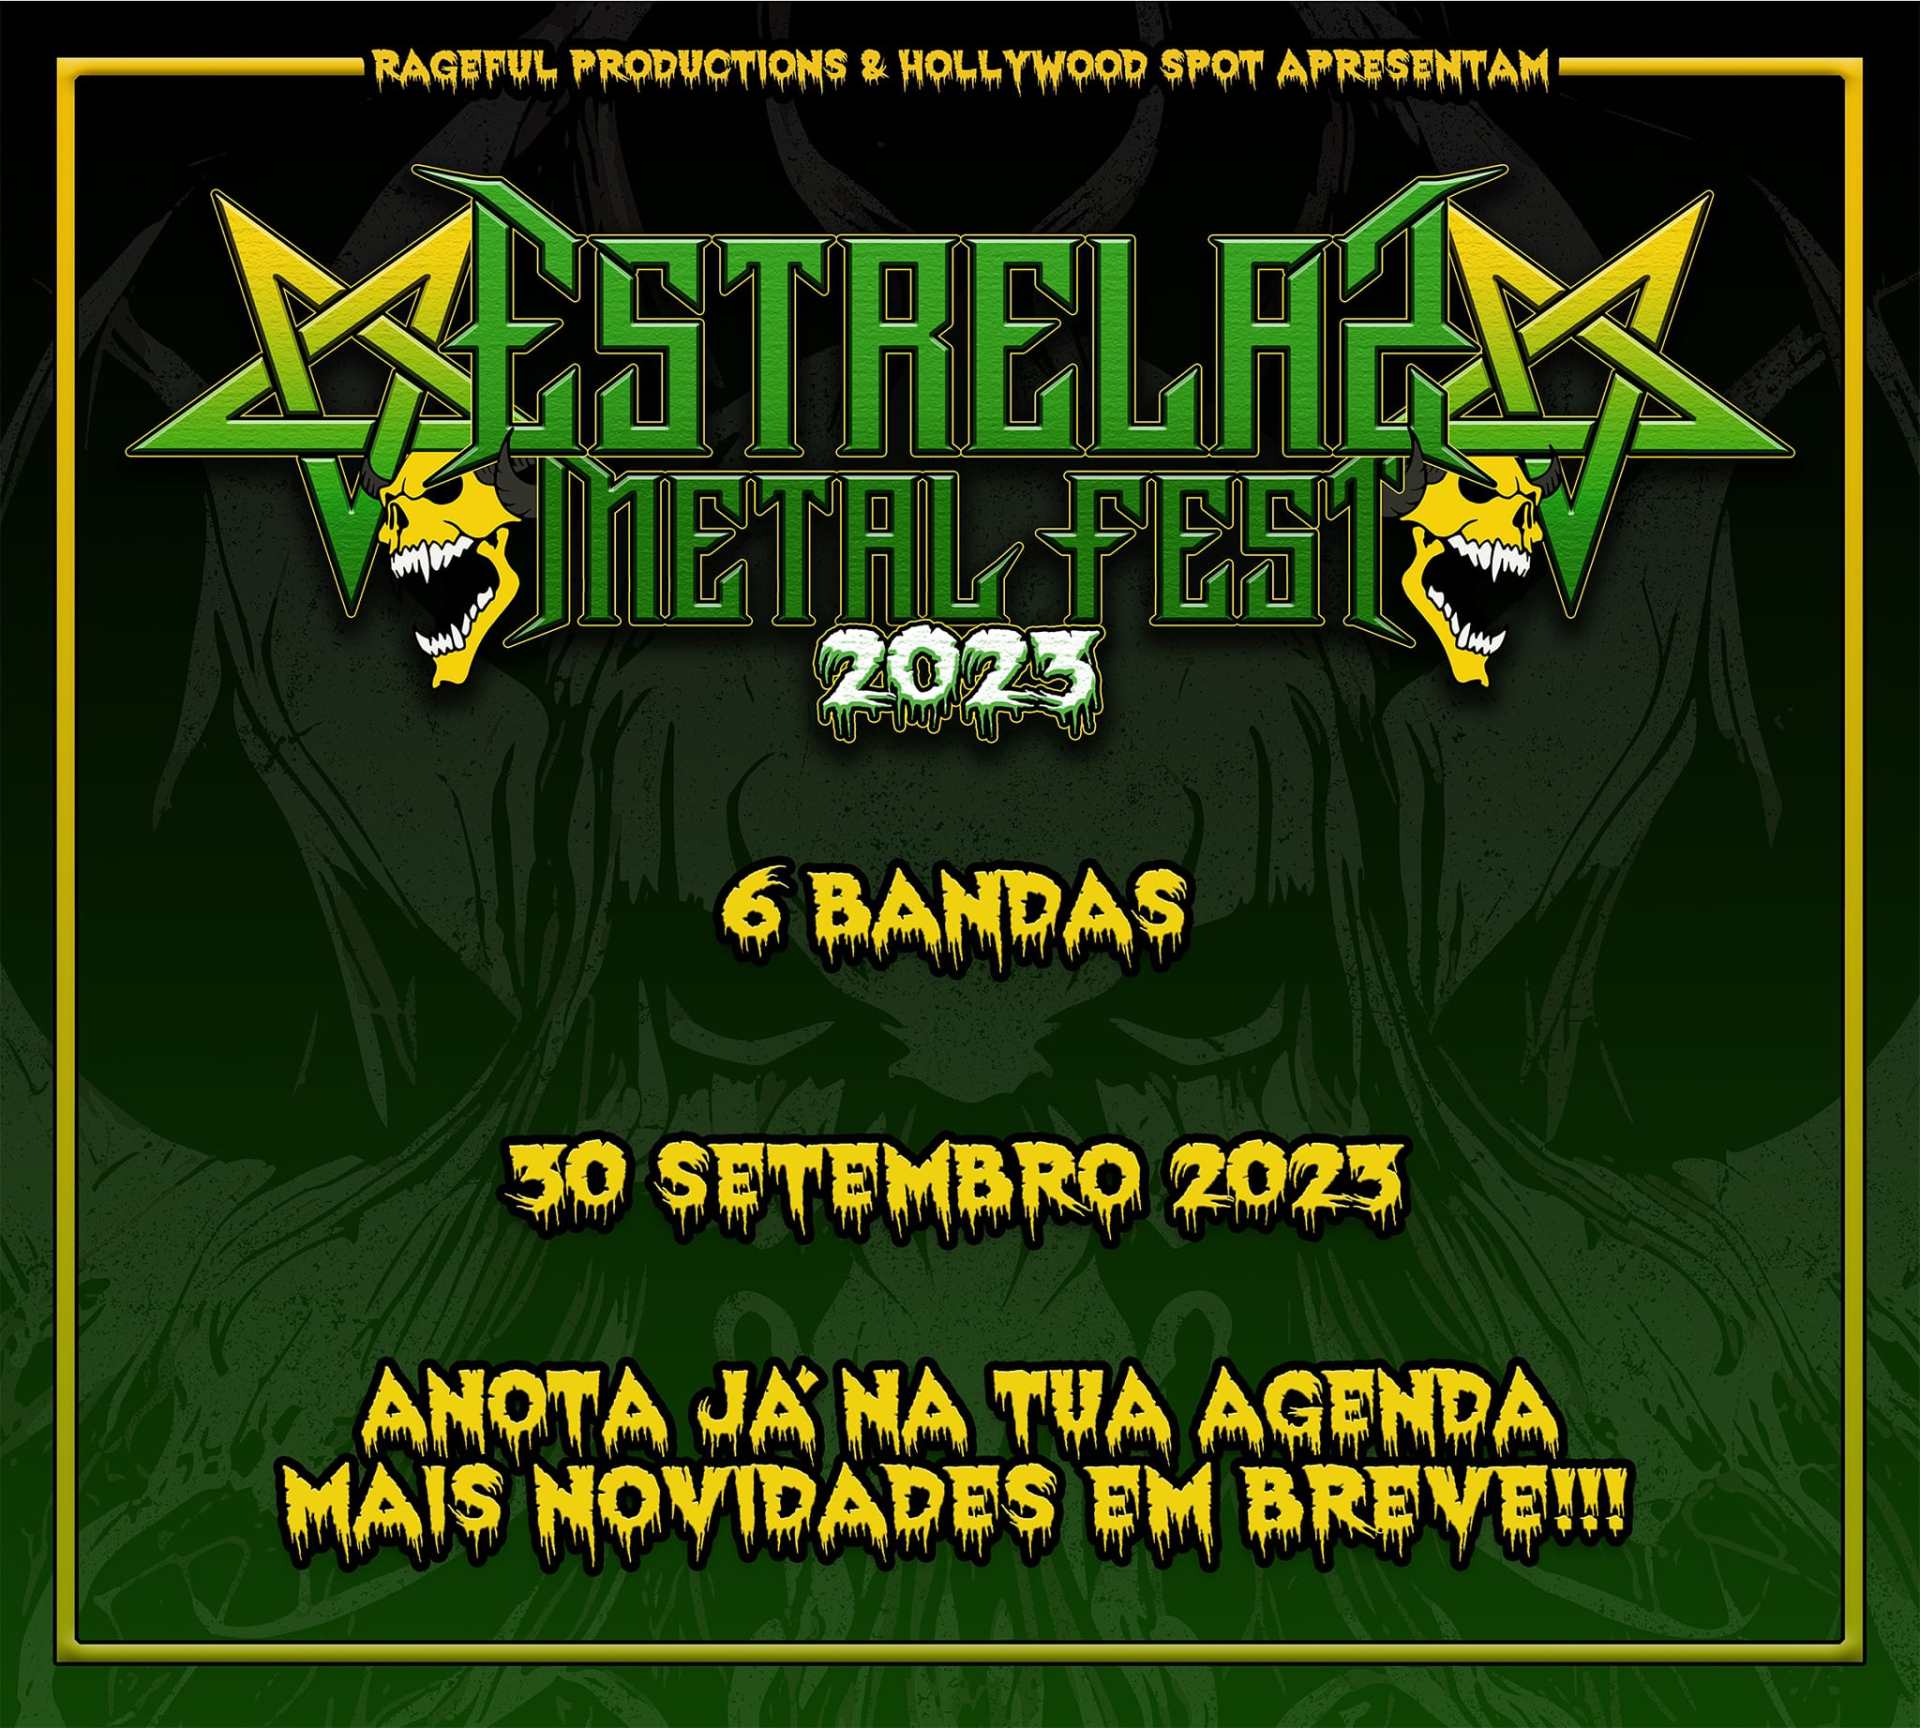 Estrelas Metal Fest aaa